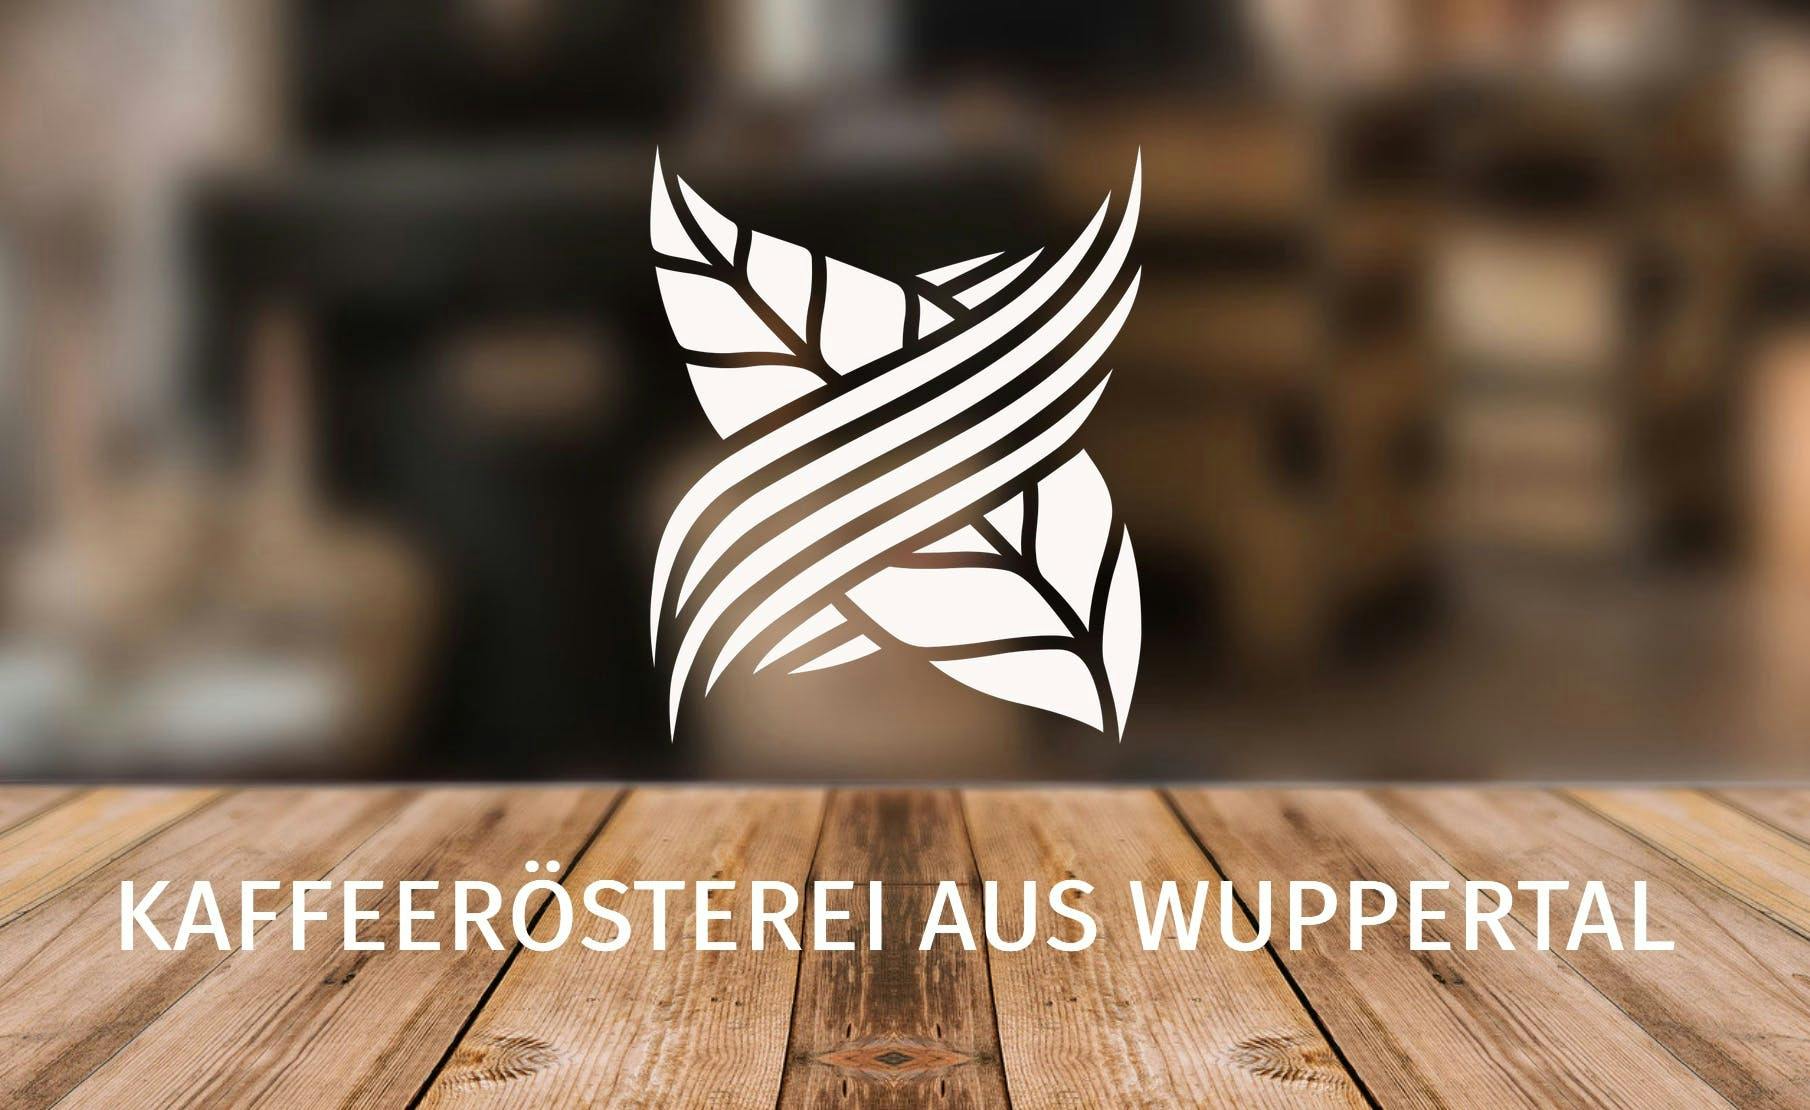 Logo der Kaffeeröster Kivamo aus Wuppertal als Beispiel für gutes Branding